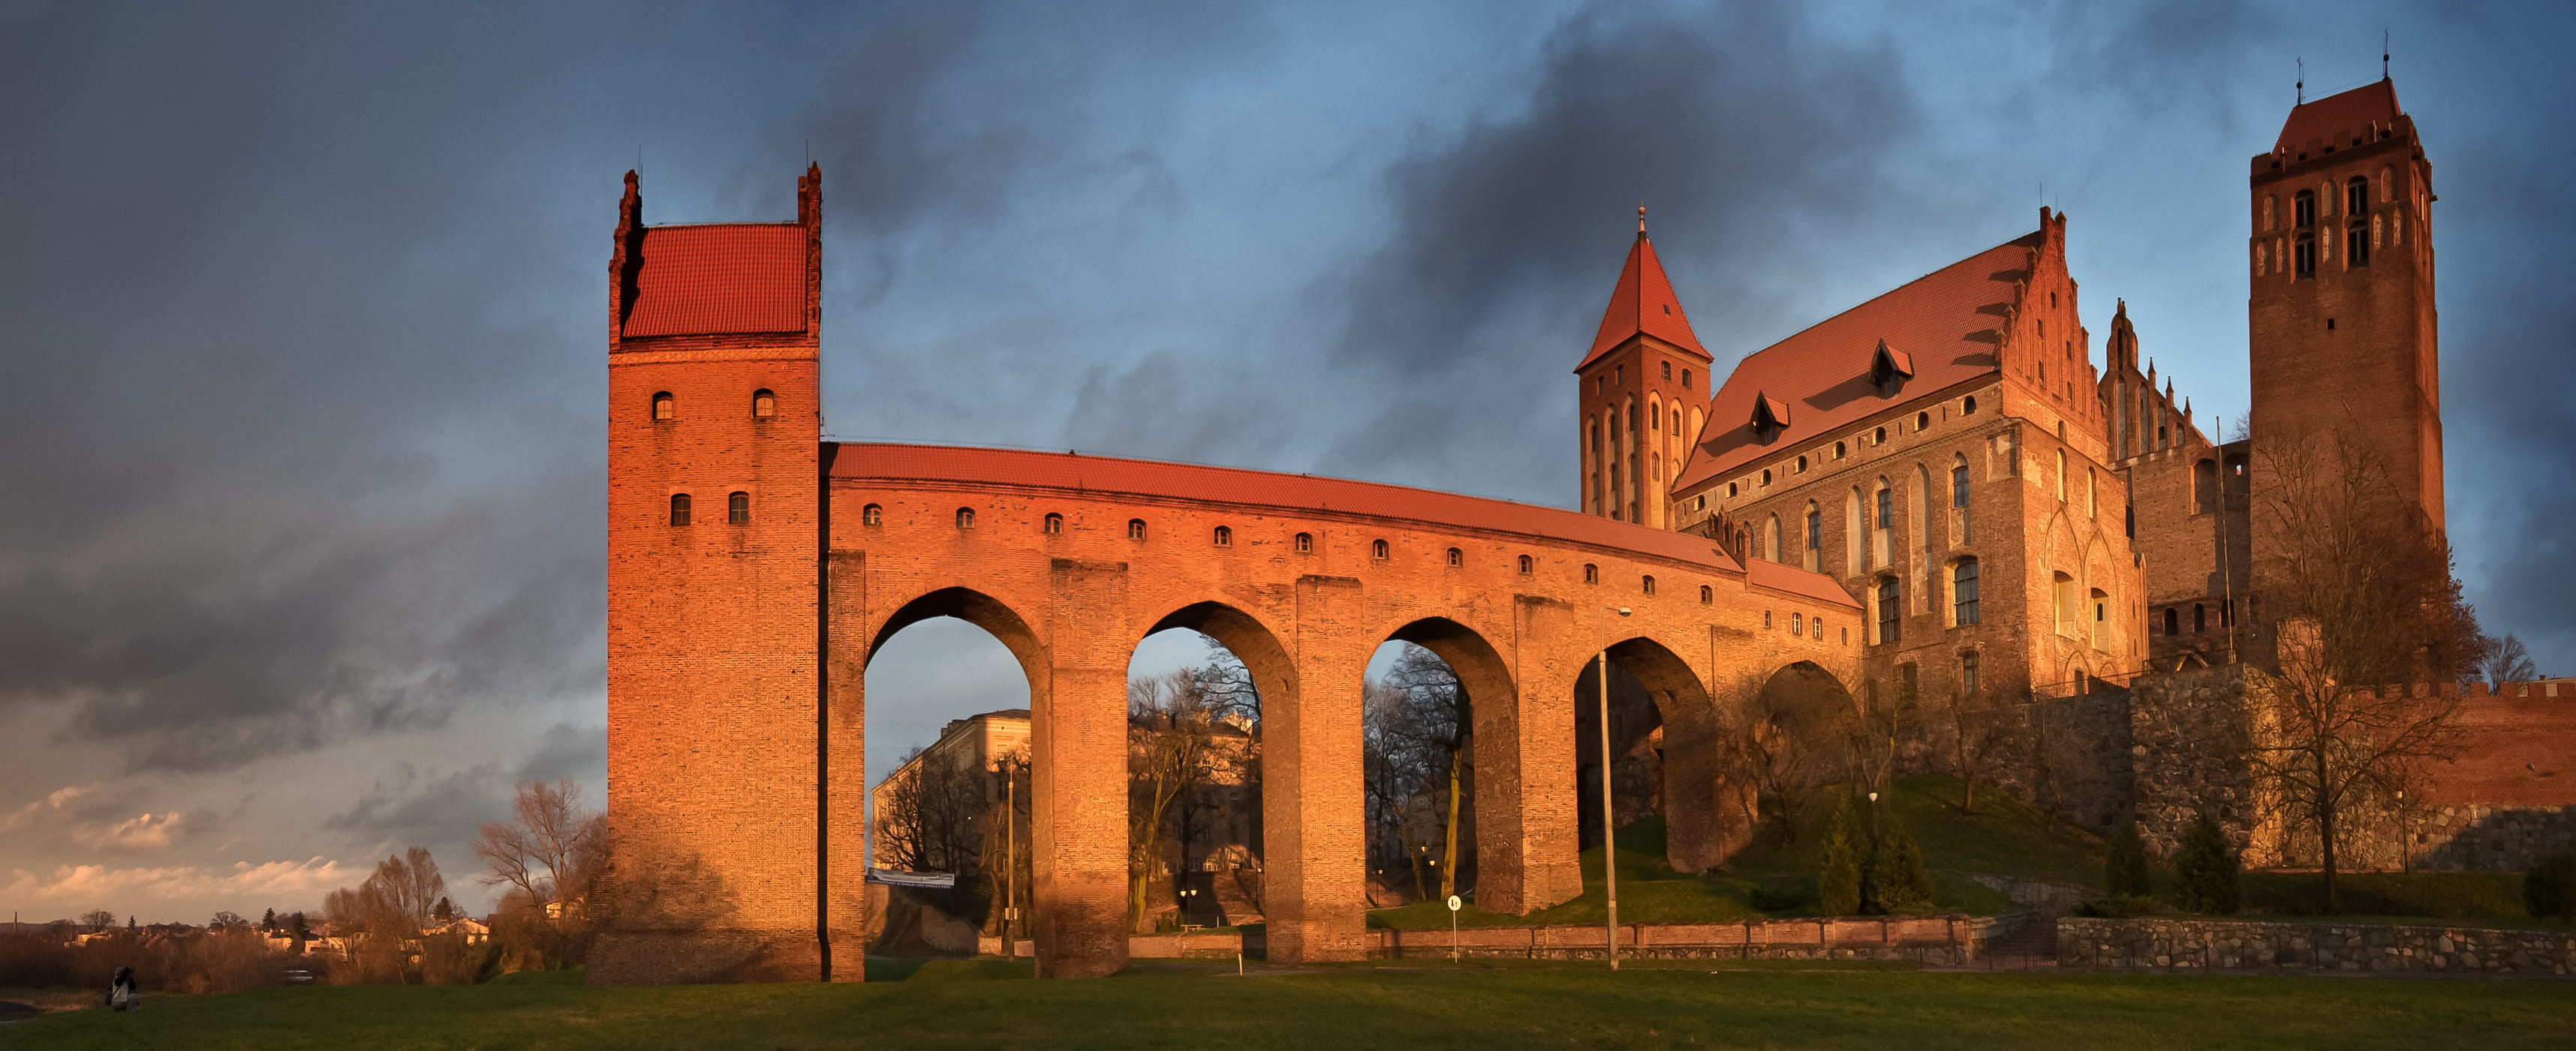 Kwidzyn, castle, Poland, architecture, built structure, building exterior